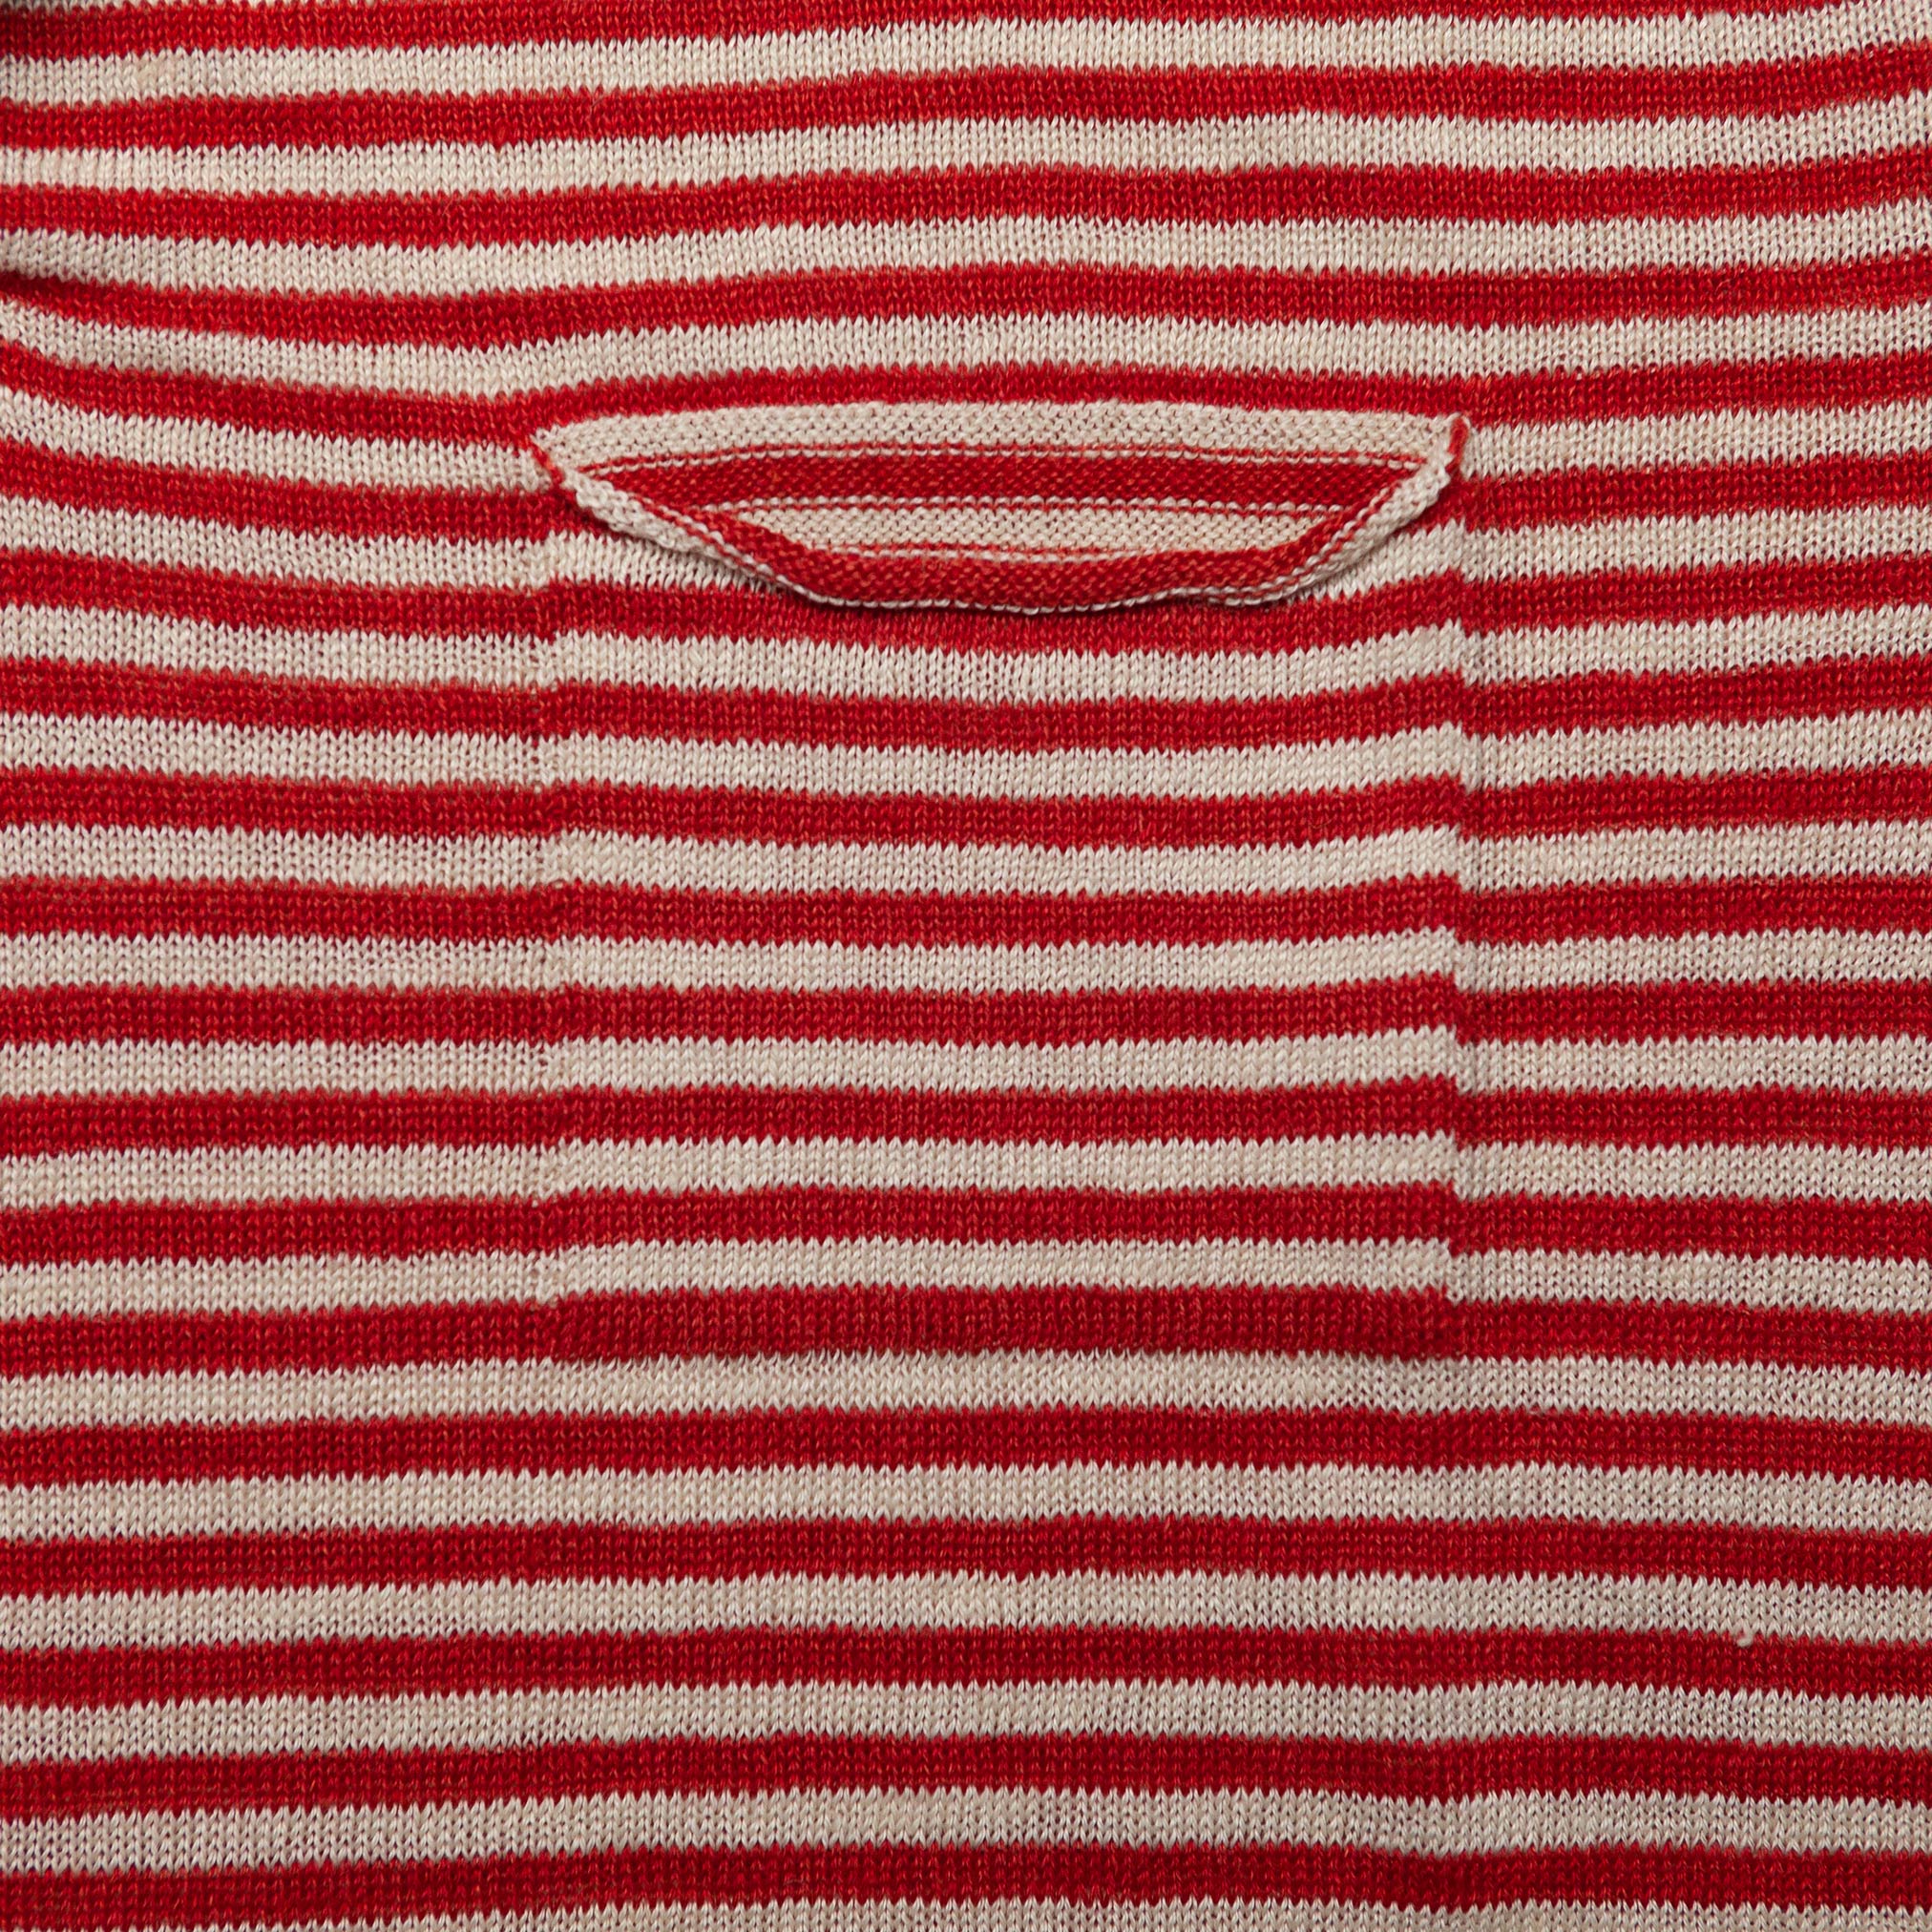 Neo Linen Henley in Red & Ecru Stripe